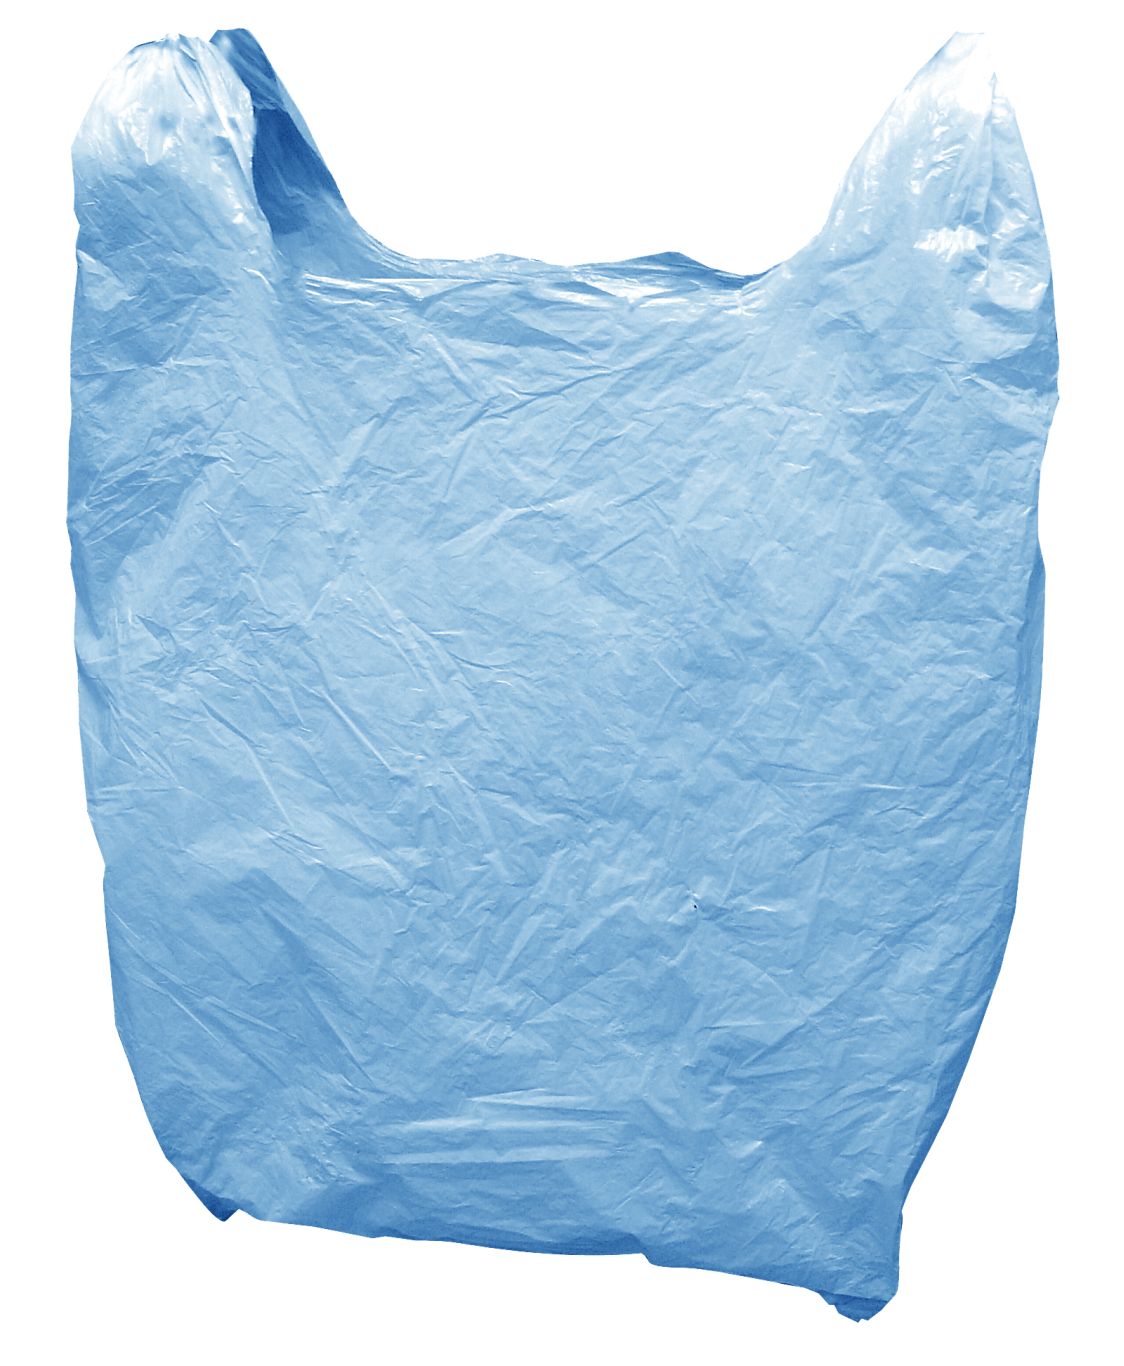 Plastic bag PNG    图片编号:81788